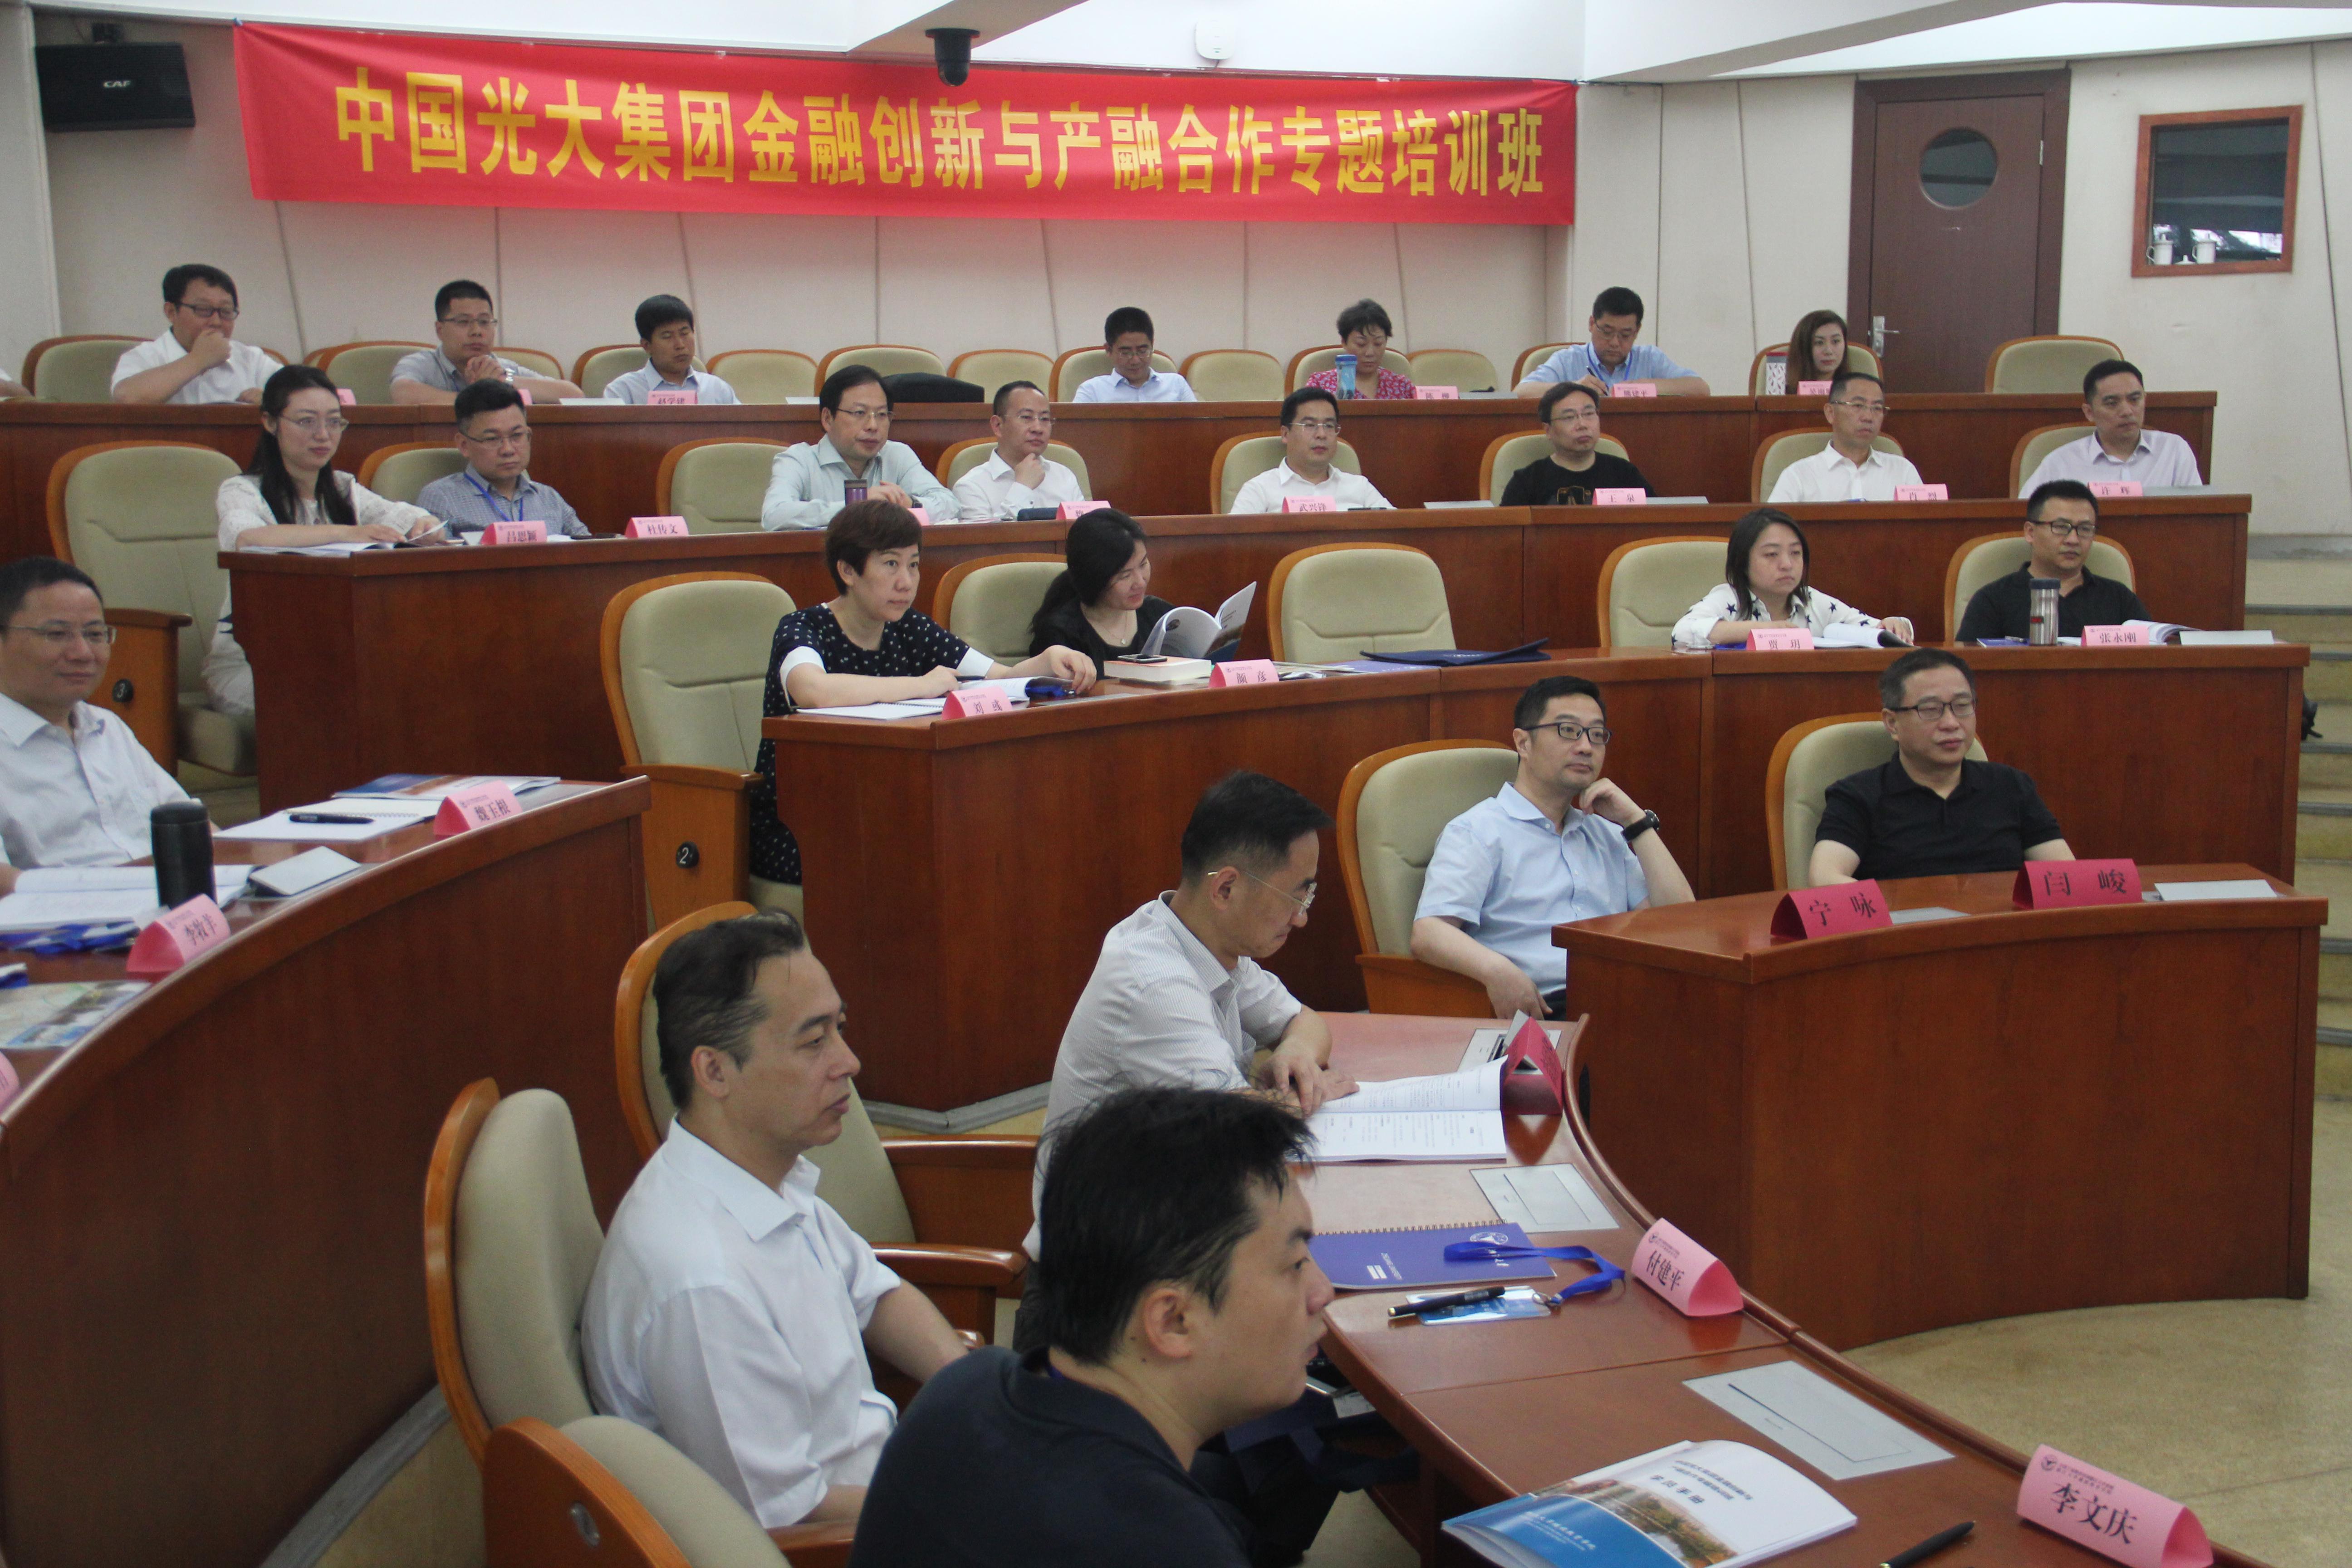 中国光大集团金融创新与产融合作培训班在浙大开班